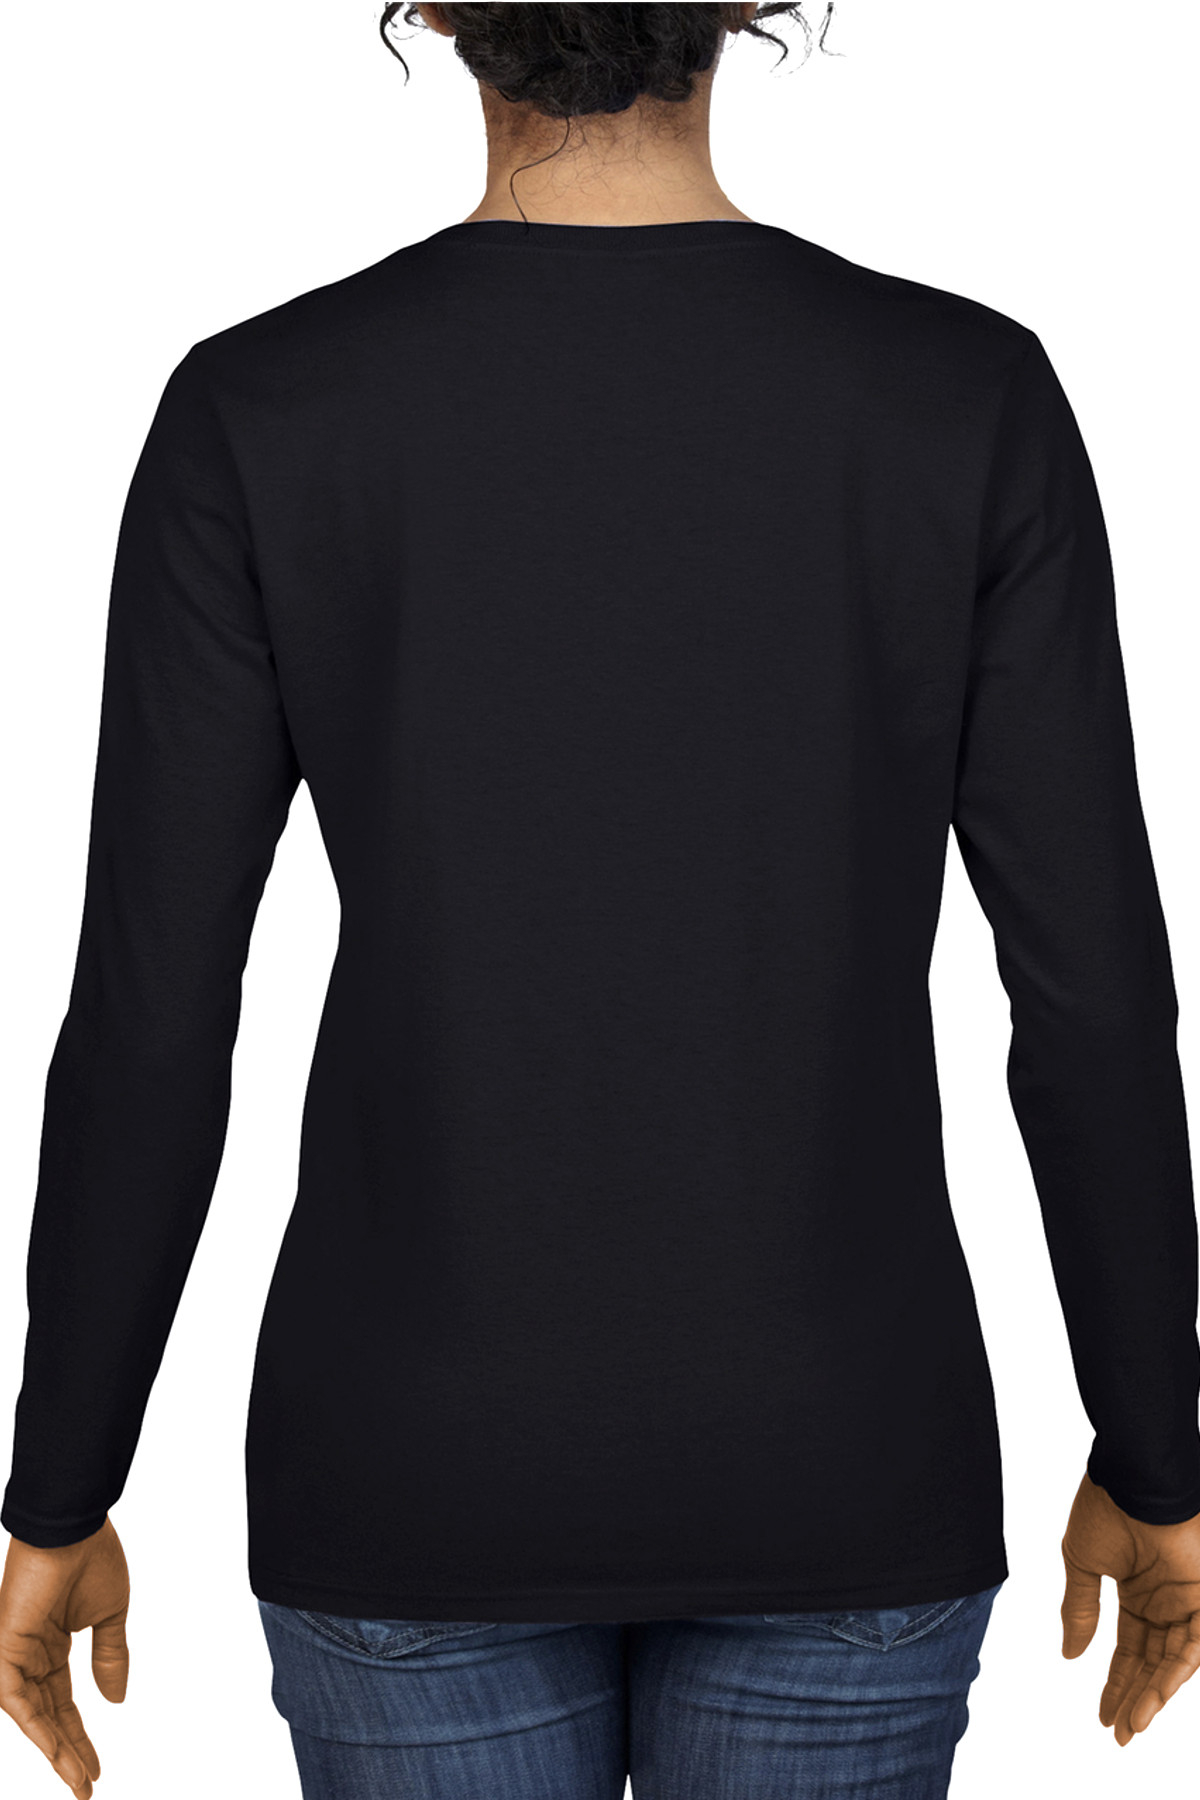 Ny Güvercinleri Siyah Bisiklet Yaka Uzun Kollu Penye Kadın T-shirt